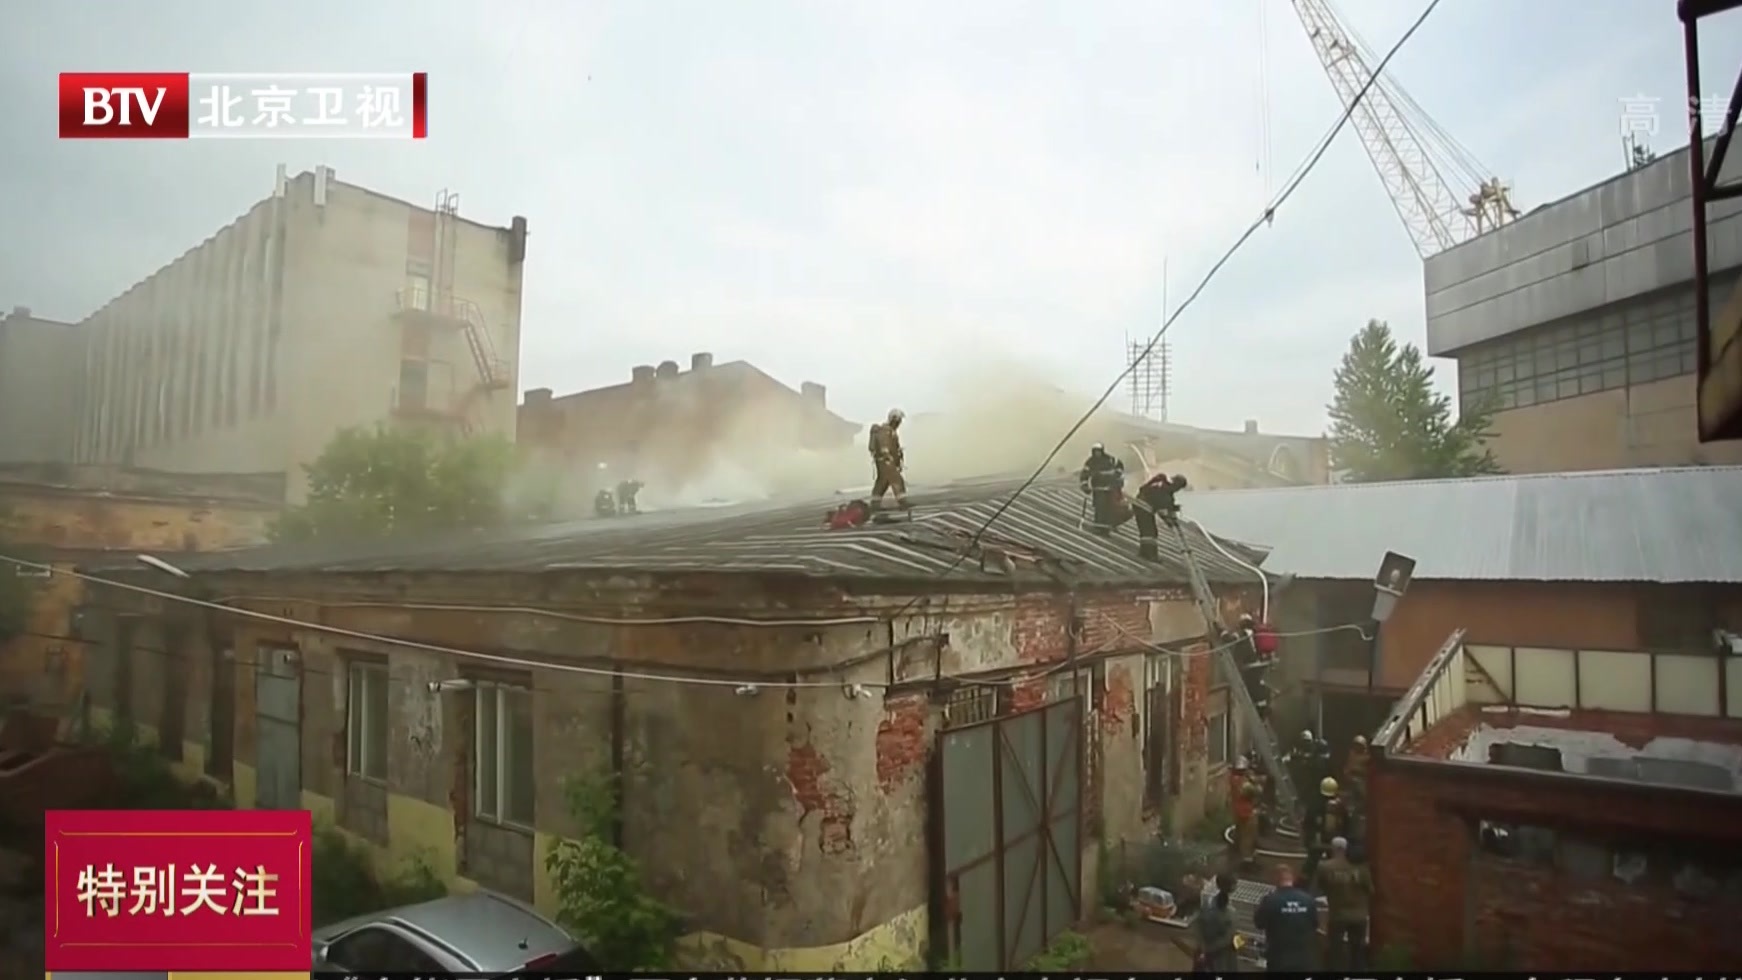 俄罗斯一动物收容所起火  消防员救援